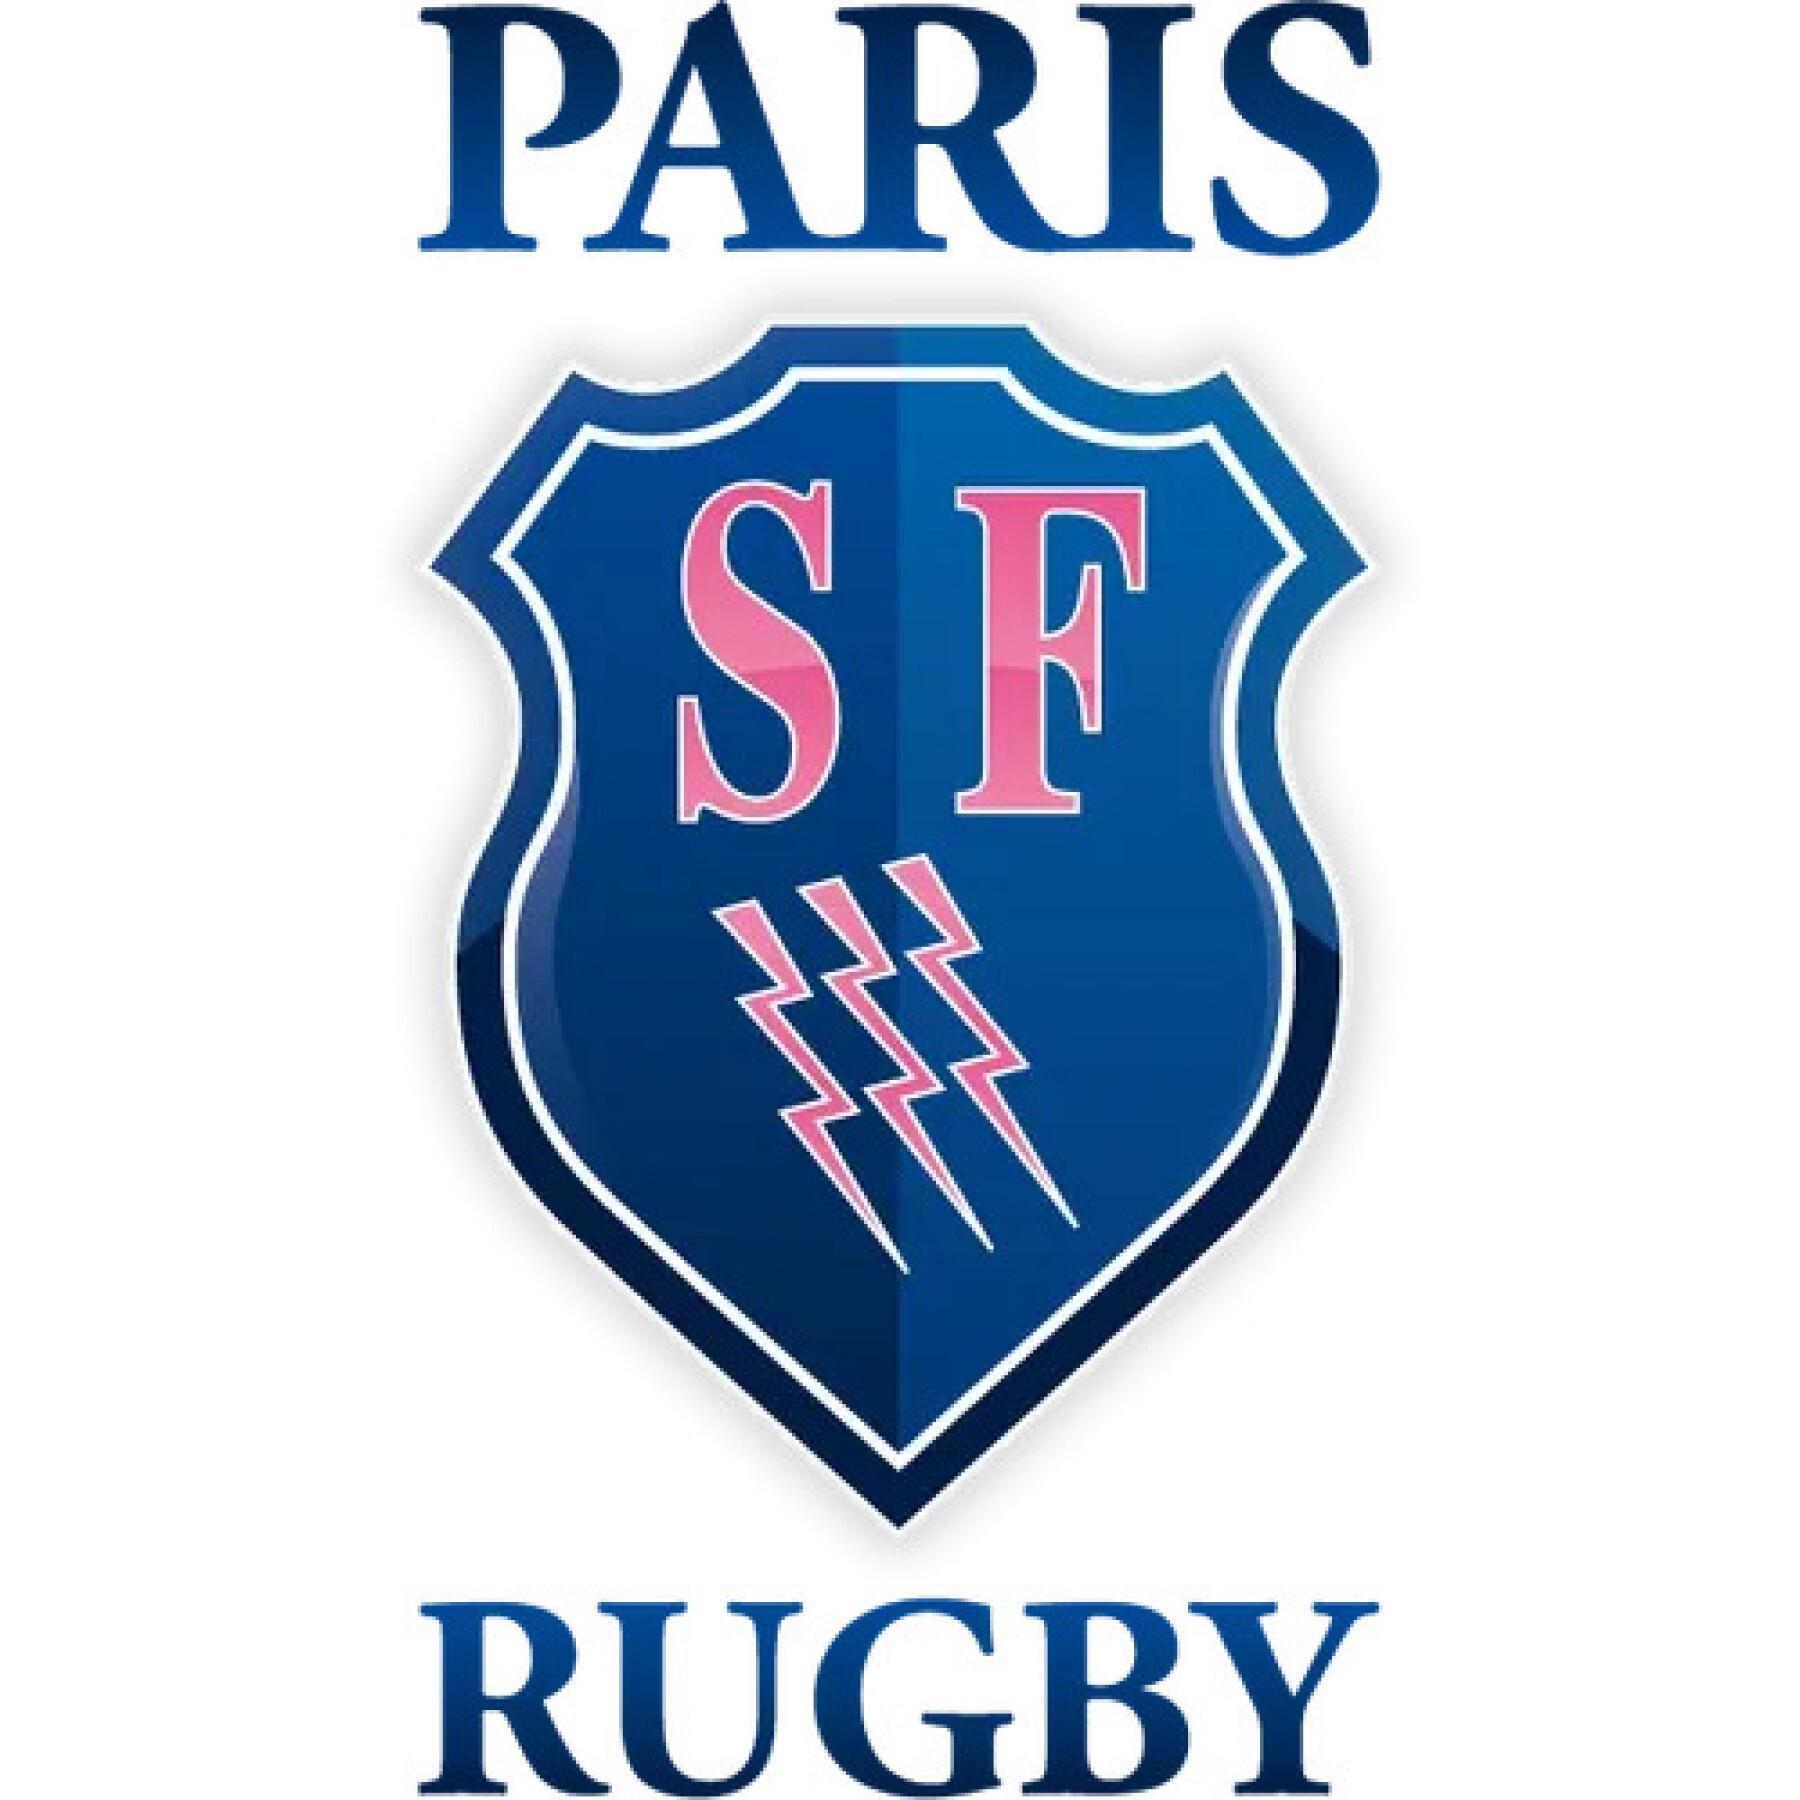 Home jersey Stade Français Paris 2019/20